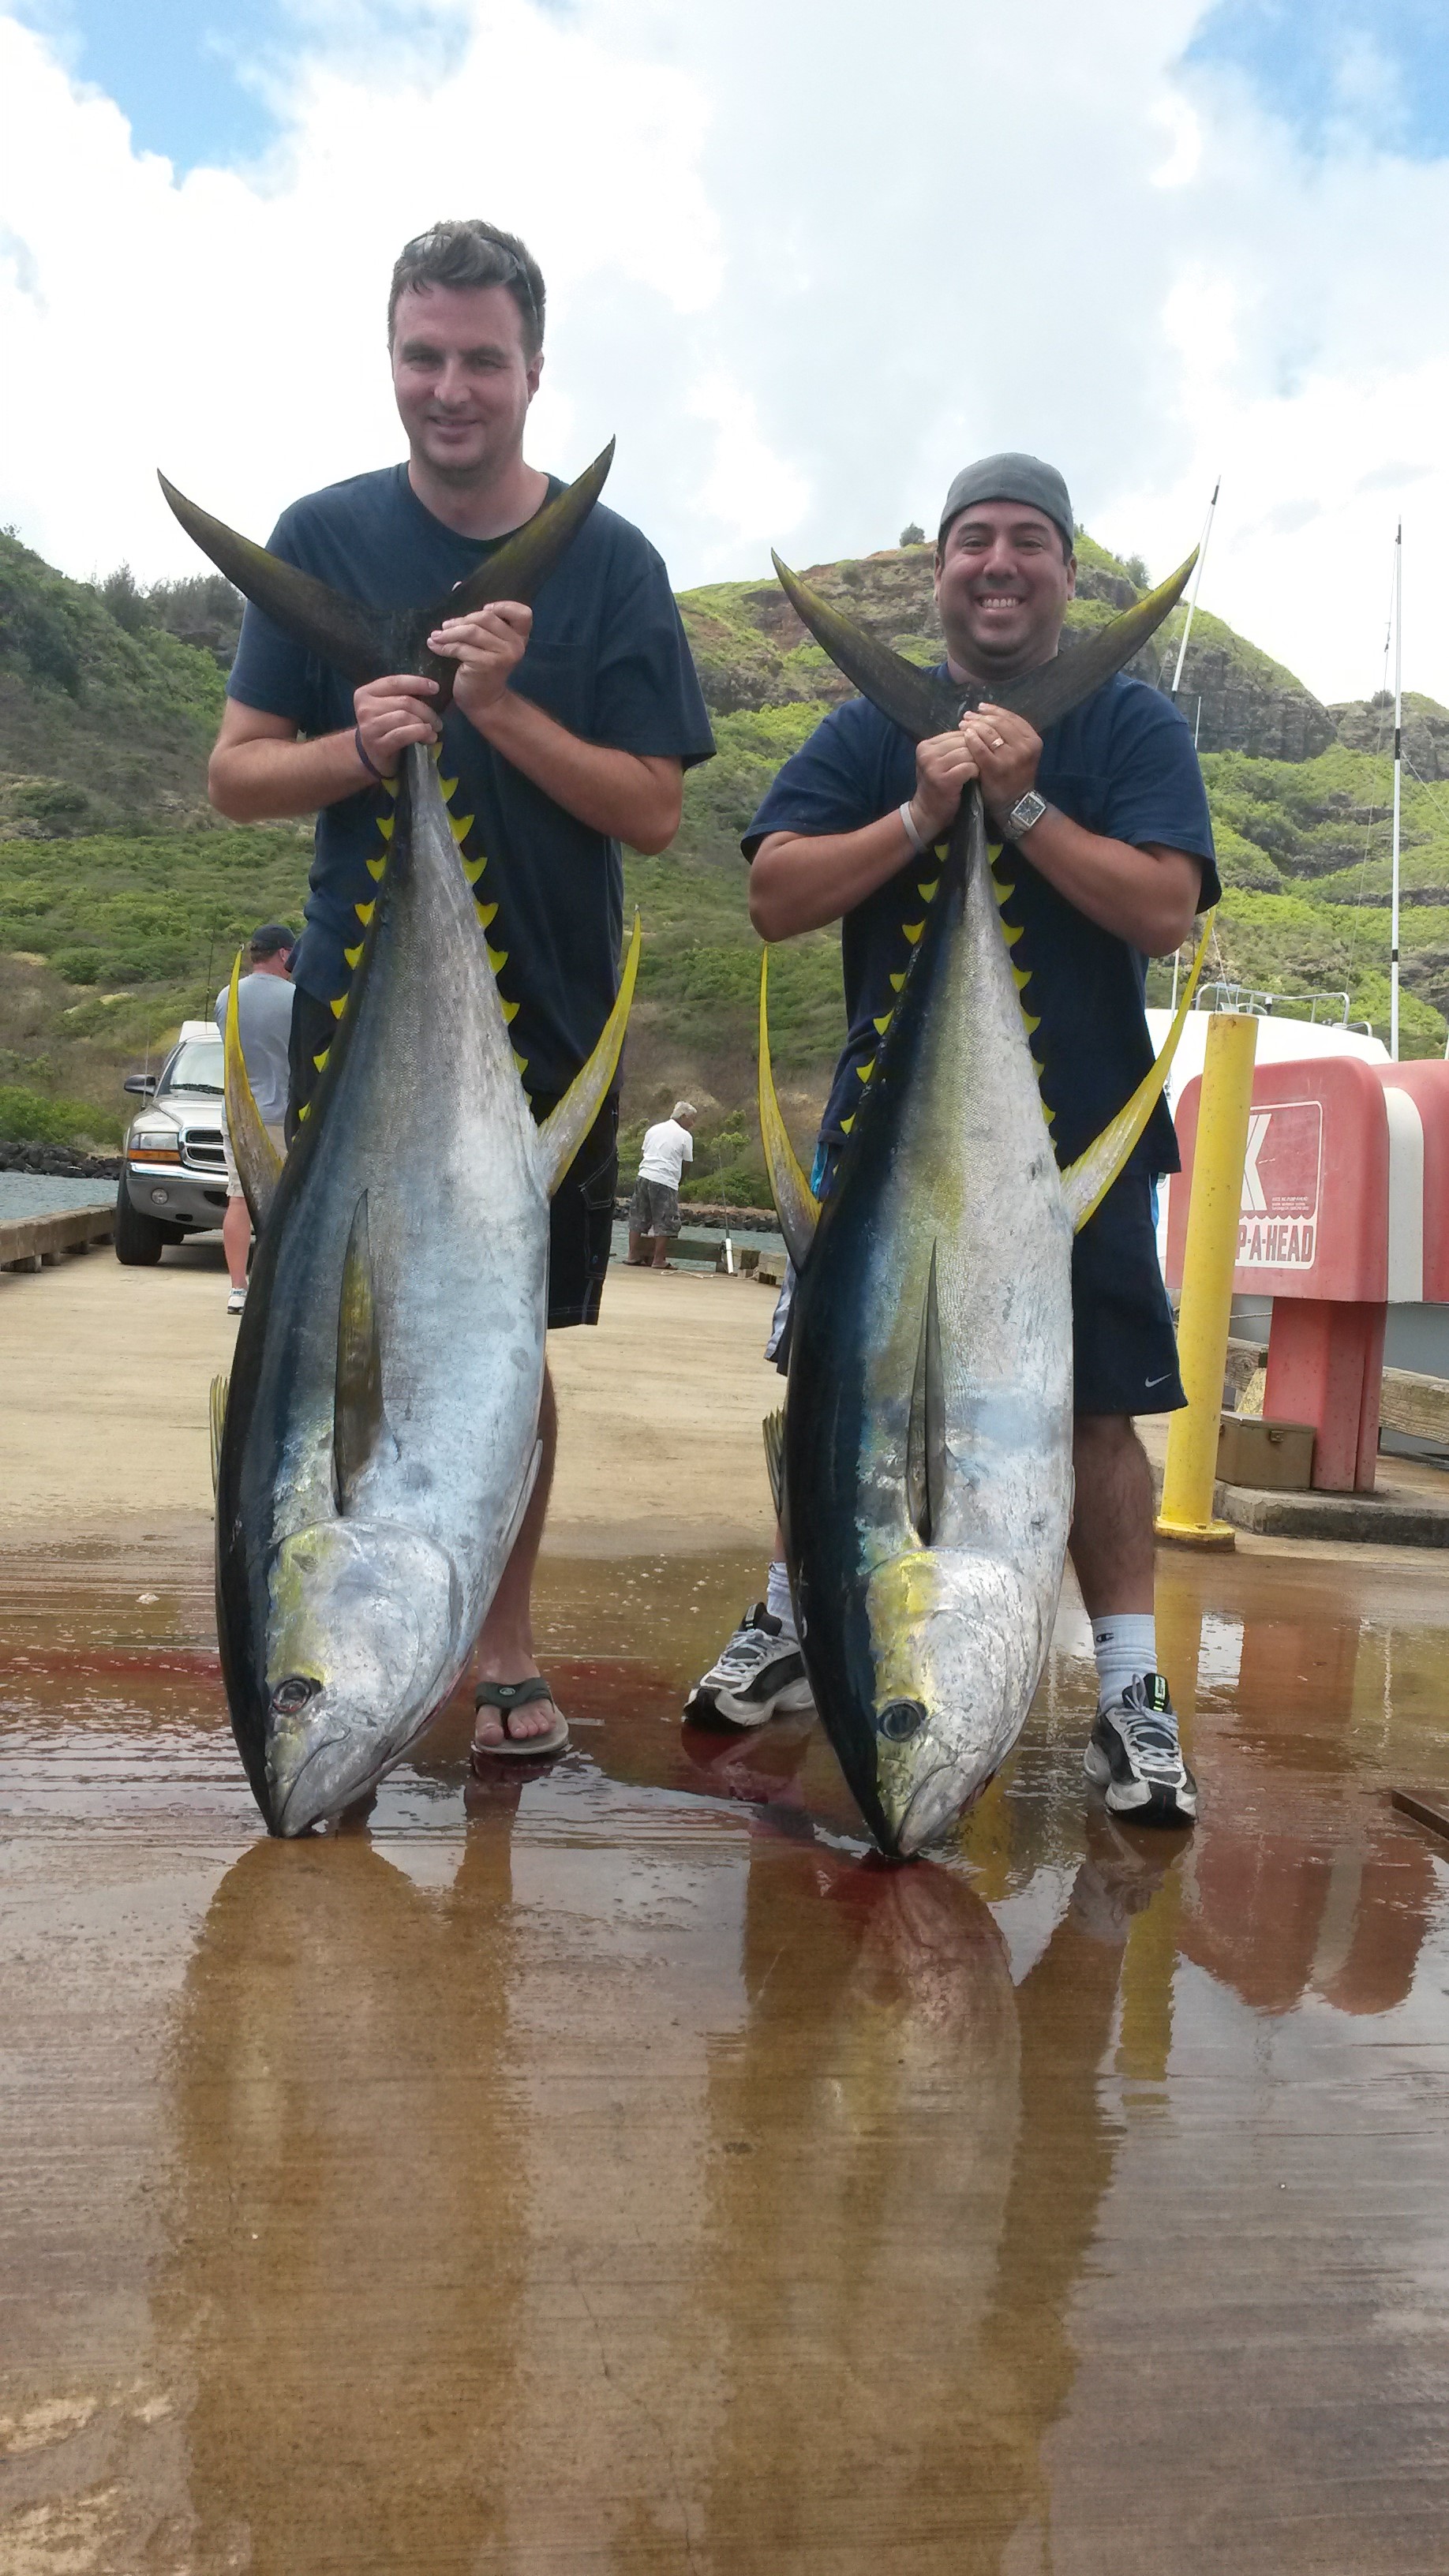 Ohana Fishing Charters